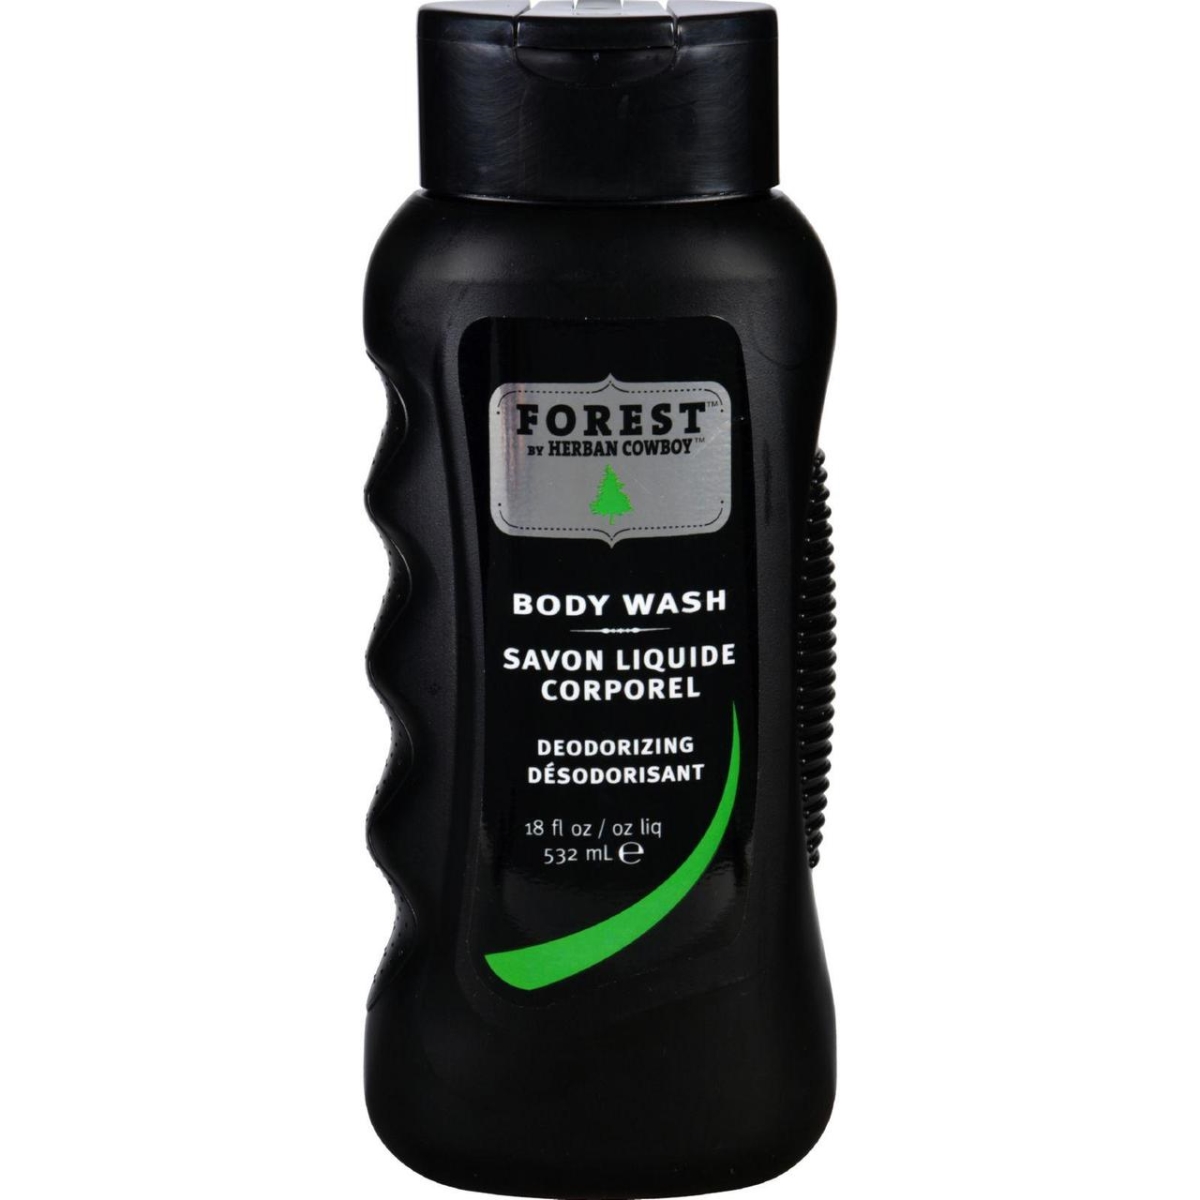 Hg1718014 18 Oz Body Wash - Forest